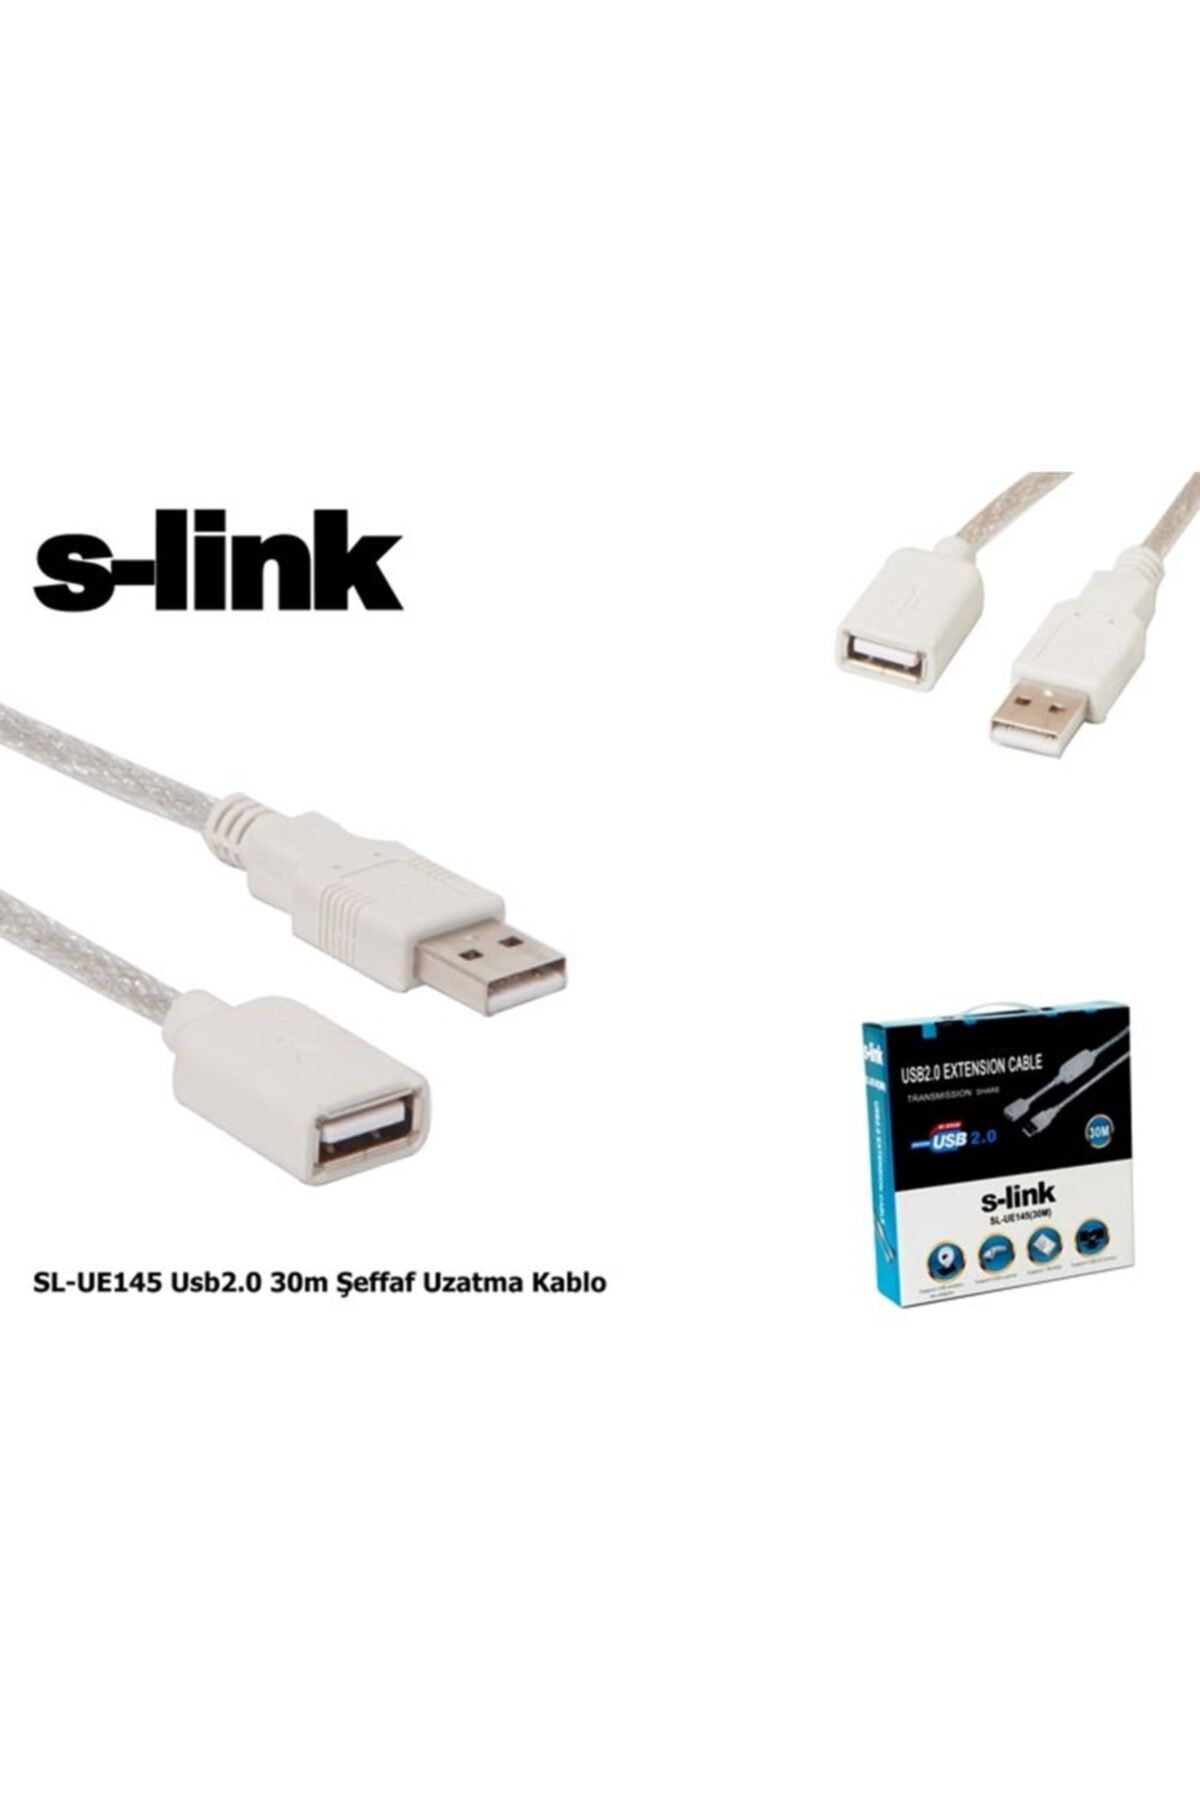 S-Link SL-UE145 30mt 2.0 Usb Şeffaf Uzatma Kablosu